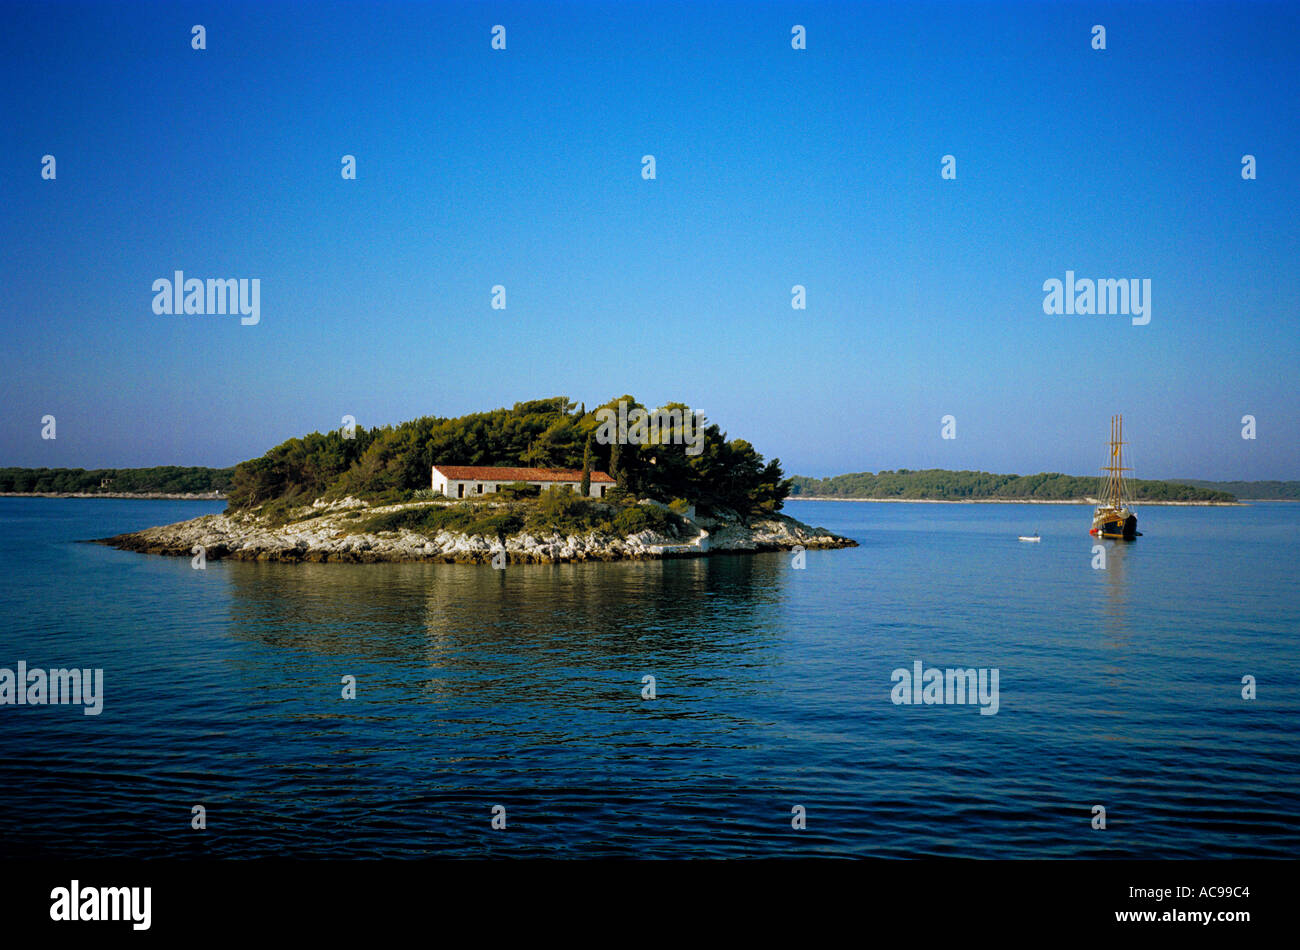 Une goélette se trouve au large de la petite île de Hvar Jerolim près de au large de la côte dalmate de la Croatie, dans le bleu vif d'un matin calme Banque D'Images